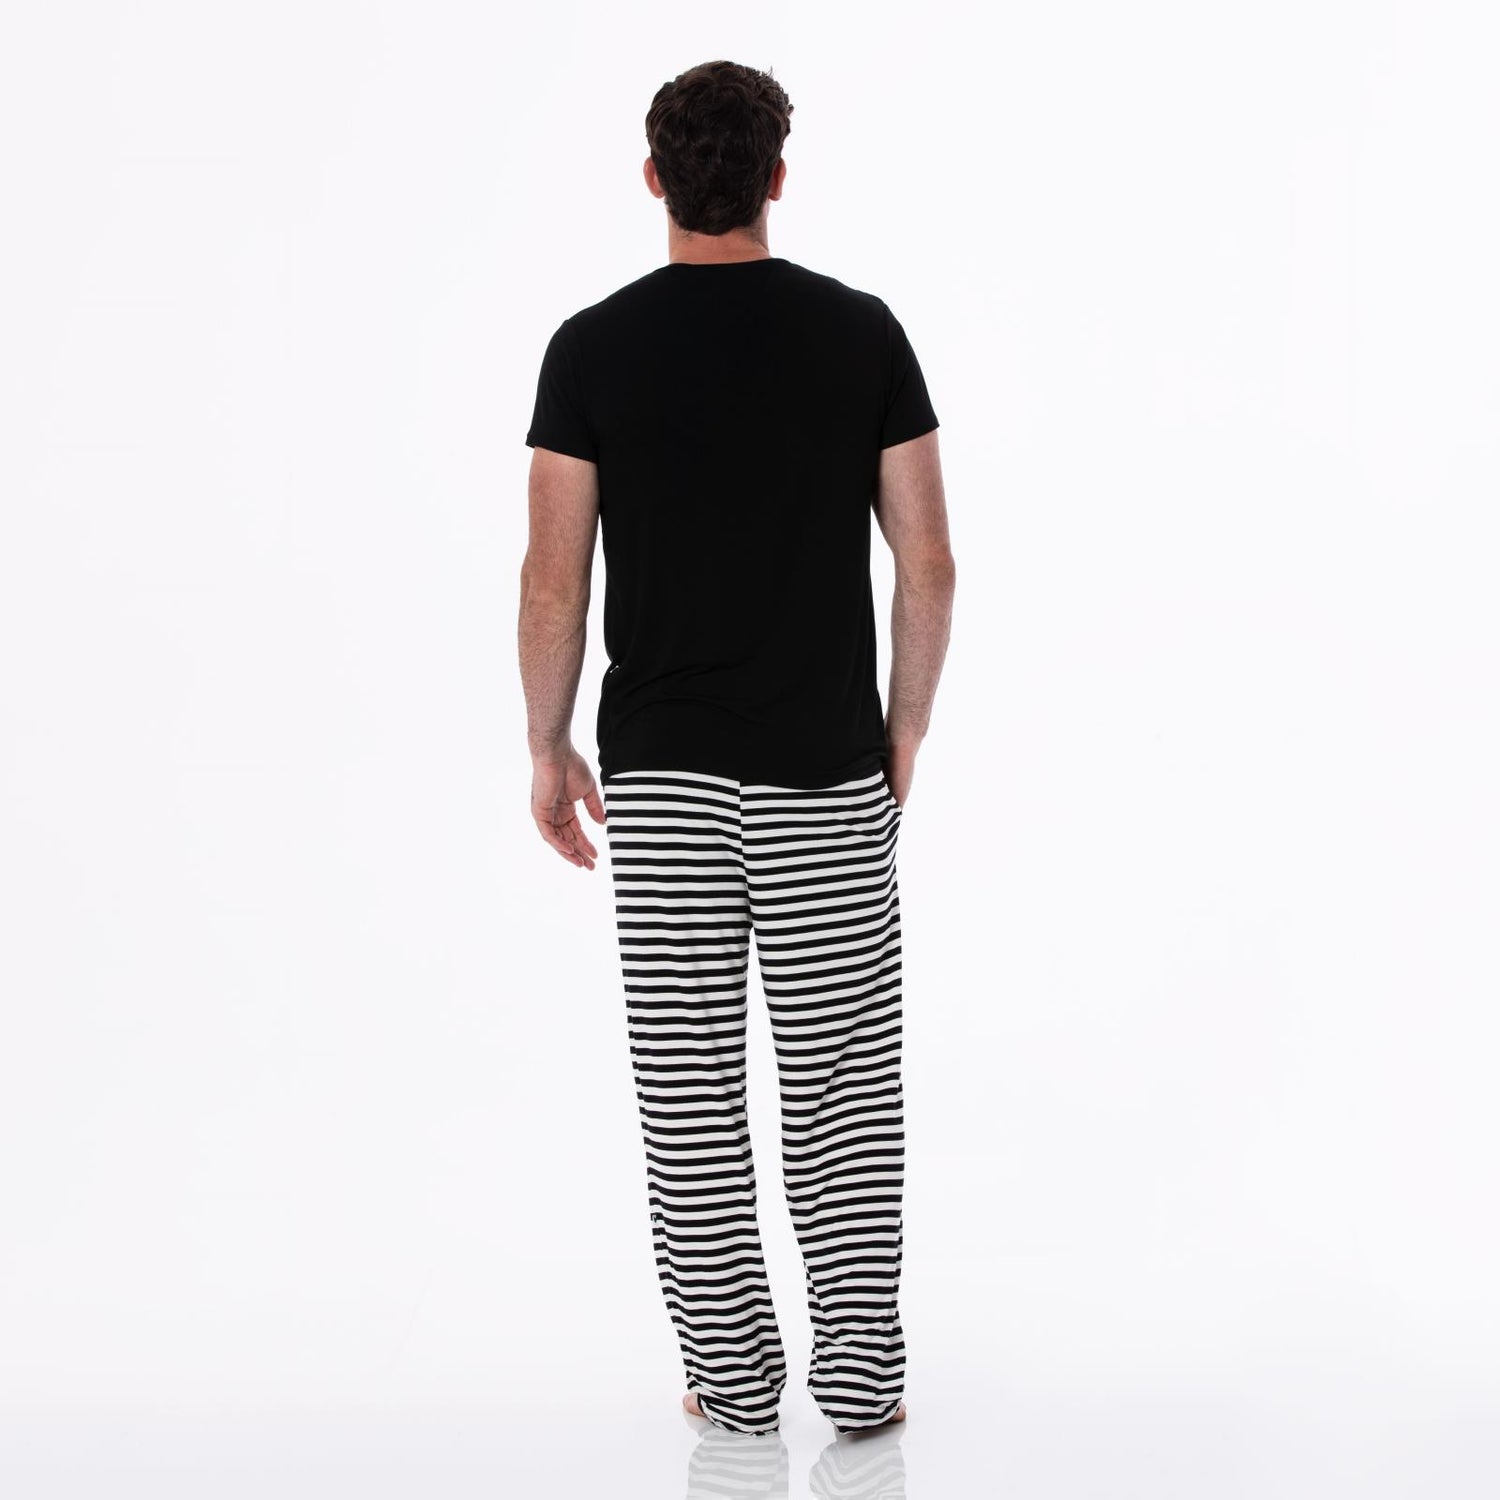 Men's Print Pajama Pants in Jailhouse Rock Stripe